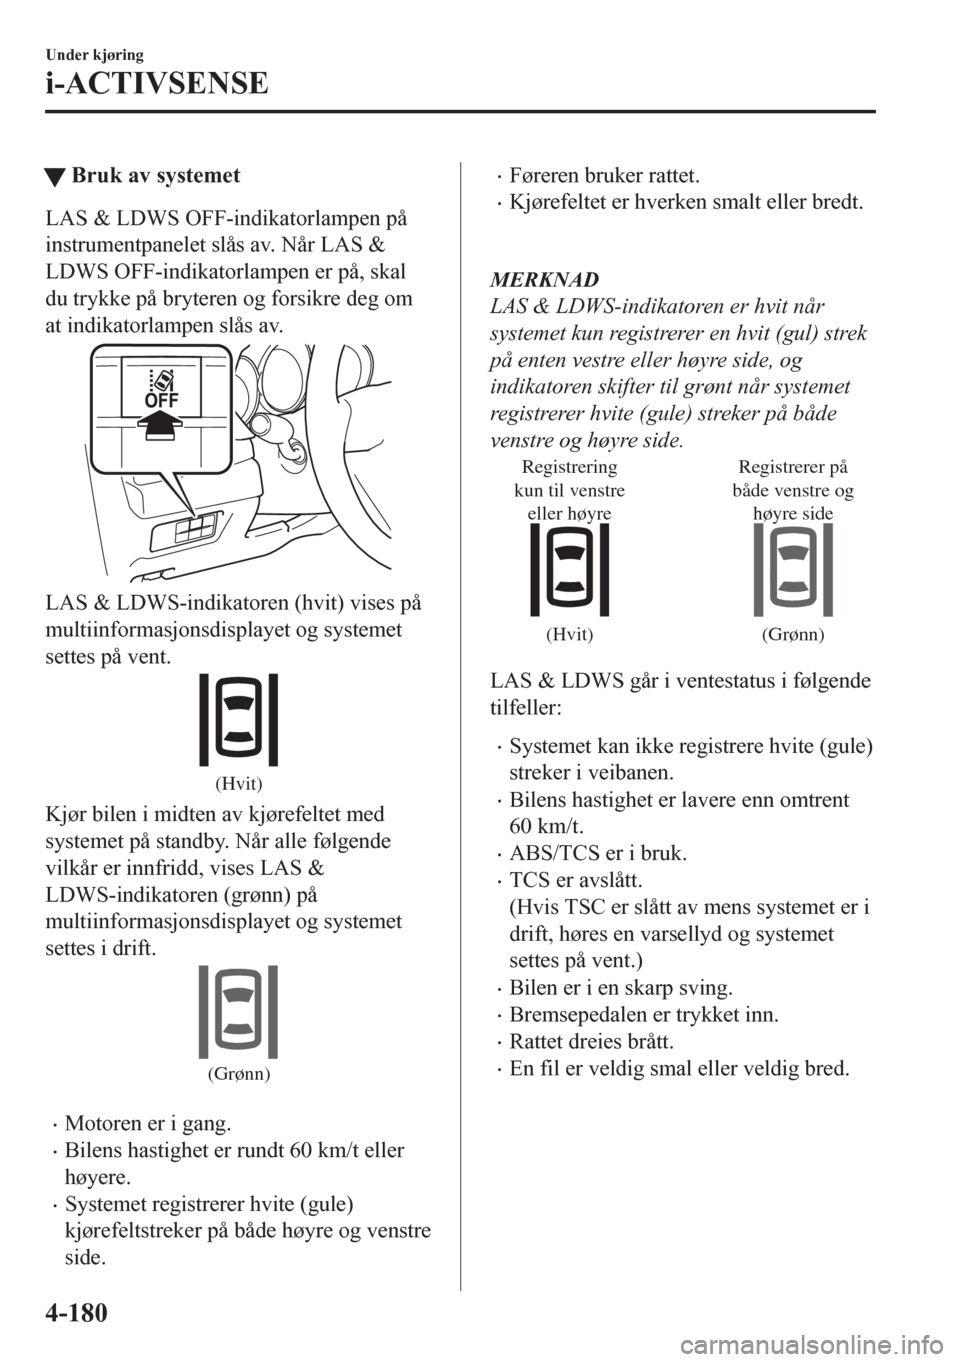 MAZDA MODEL CX-5 2018  Brukerhåndbok (in Norwegian) tBruk av systemet
LAS & LDWS OFF-indikatorlampen på
instrumentpanelet slås av. Når LAS &
LDWS OFF-indikatorlampen er på, skal
du trykke på bryteren og forsikre deg om
at indikatorlampen slås av.